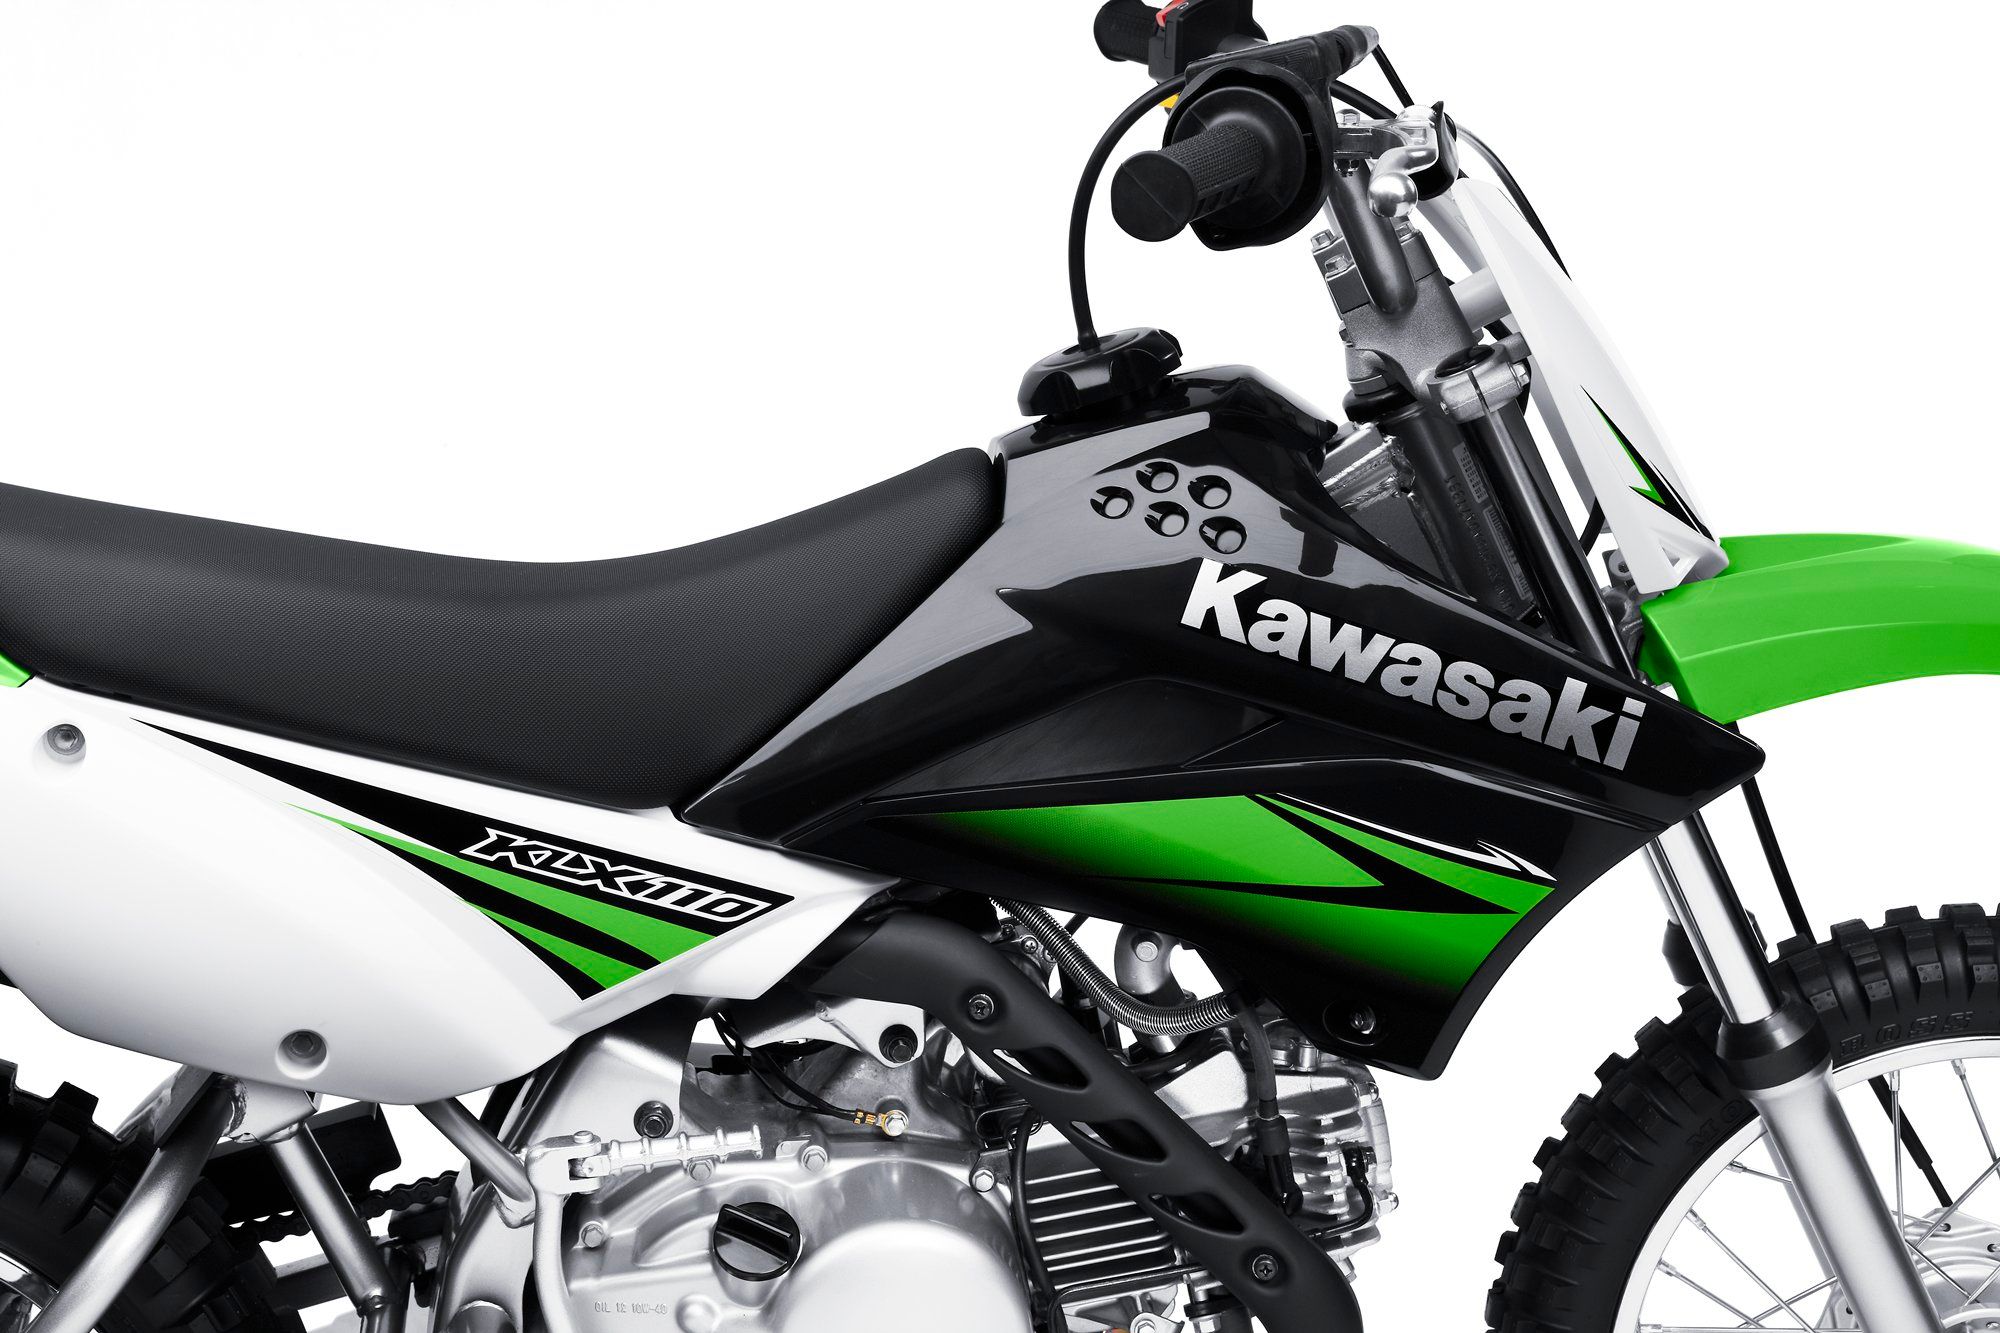  2010 Kawasaki KLX110